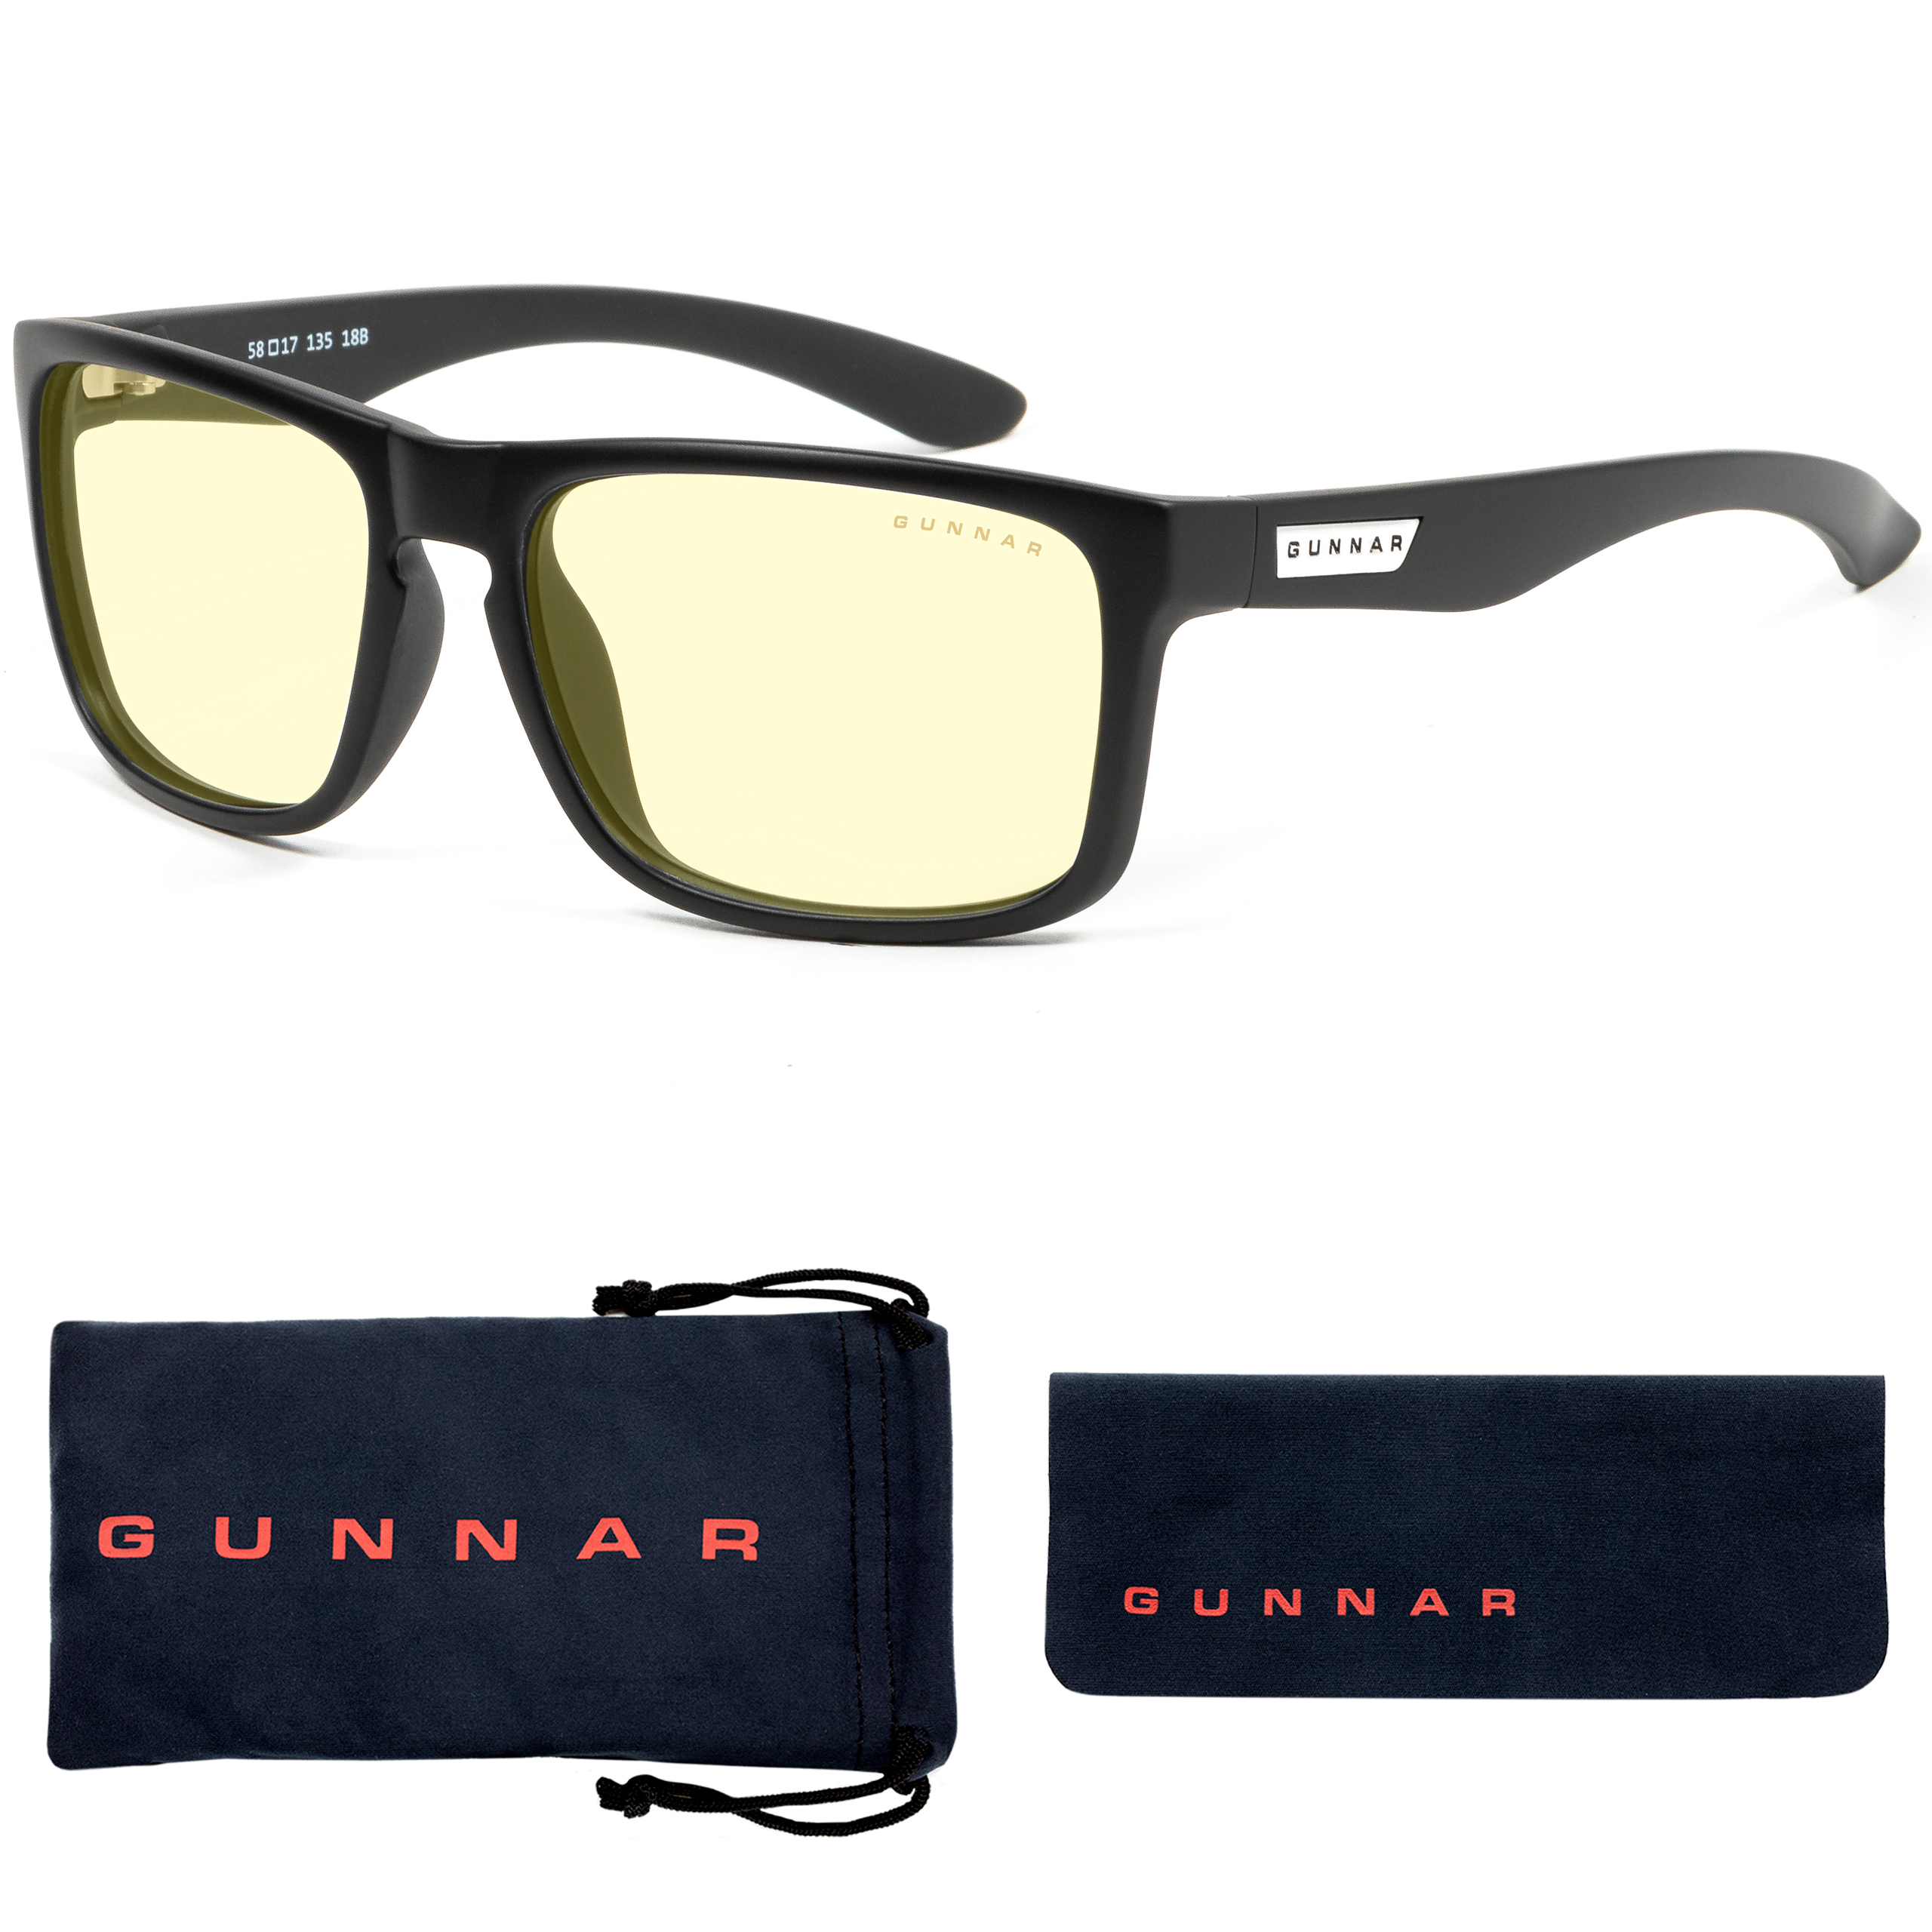 GUNNAR Intercept, Onyx Rahmen, Amber Blaulichtfilter, Stärke + Gaming UV-Schutz, Premium, Brille 1.5, Tönung